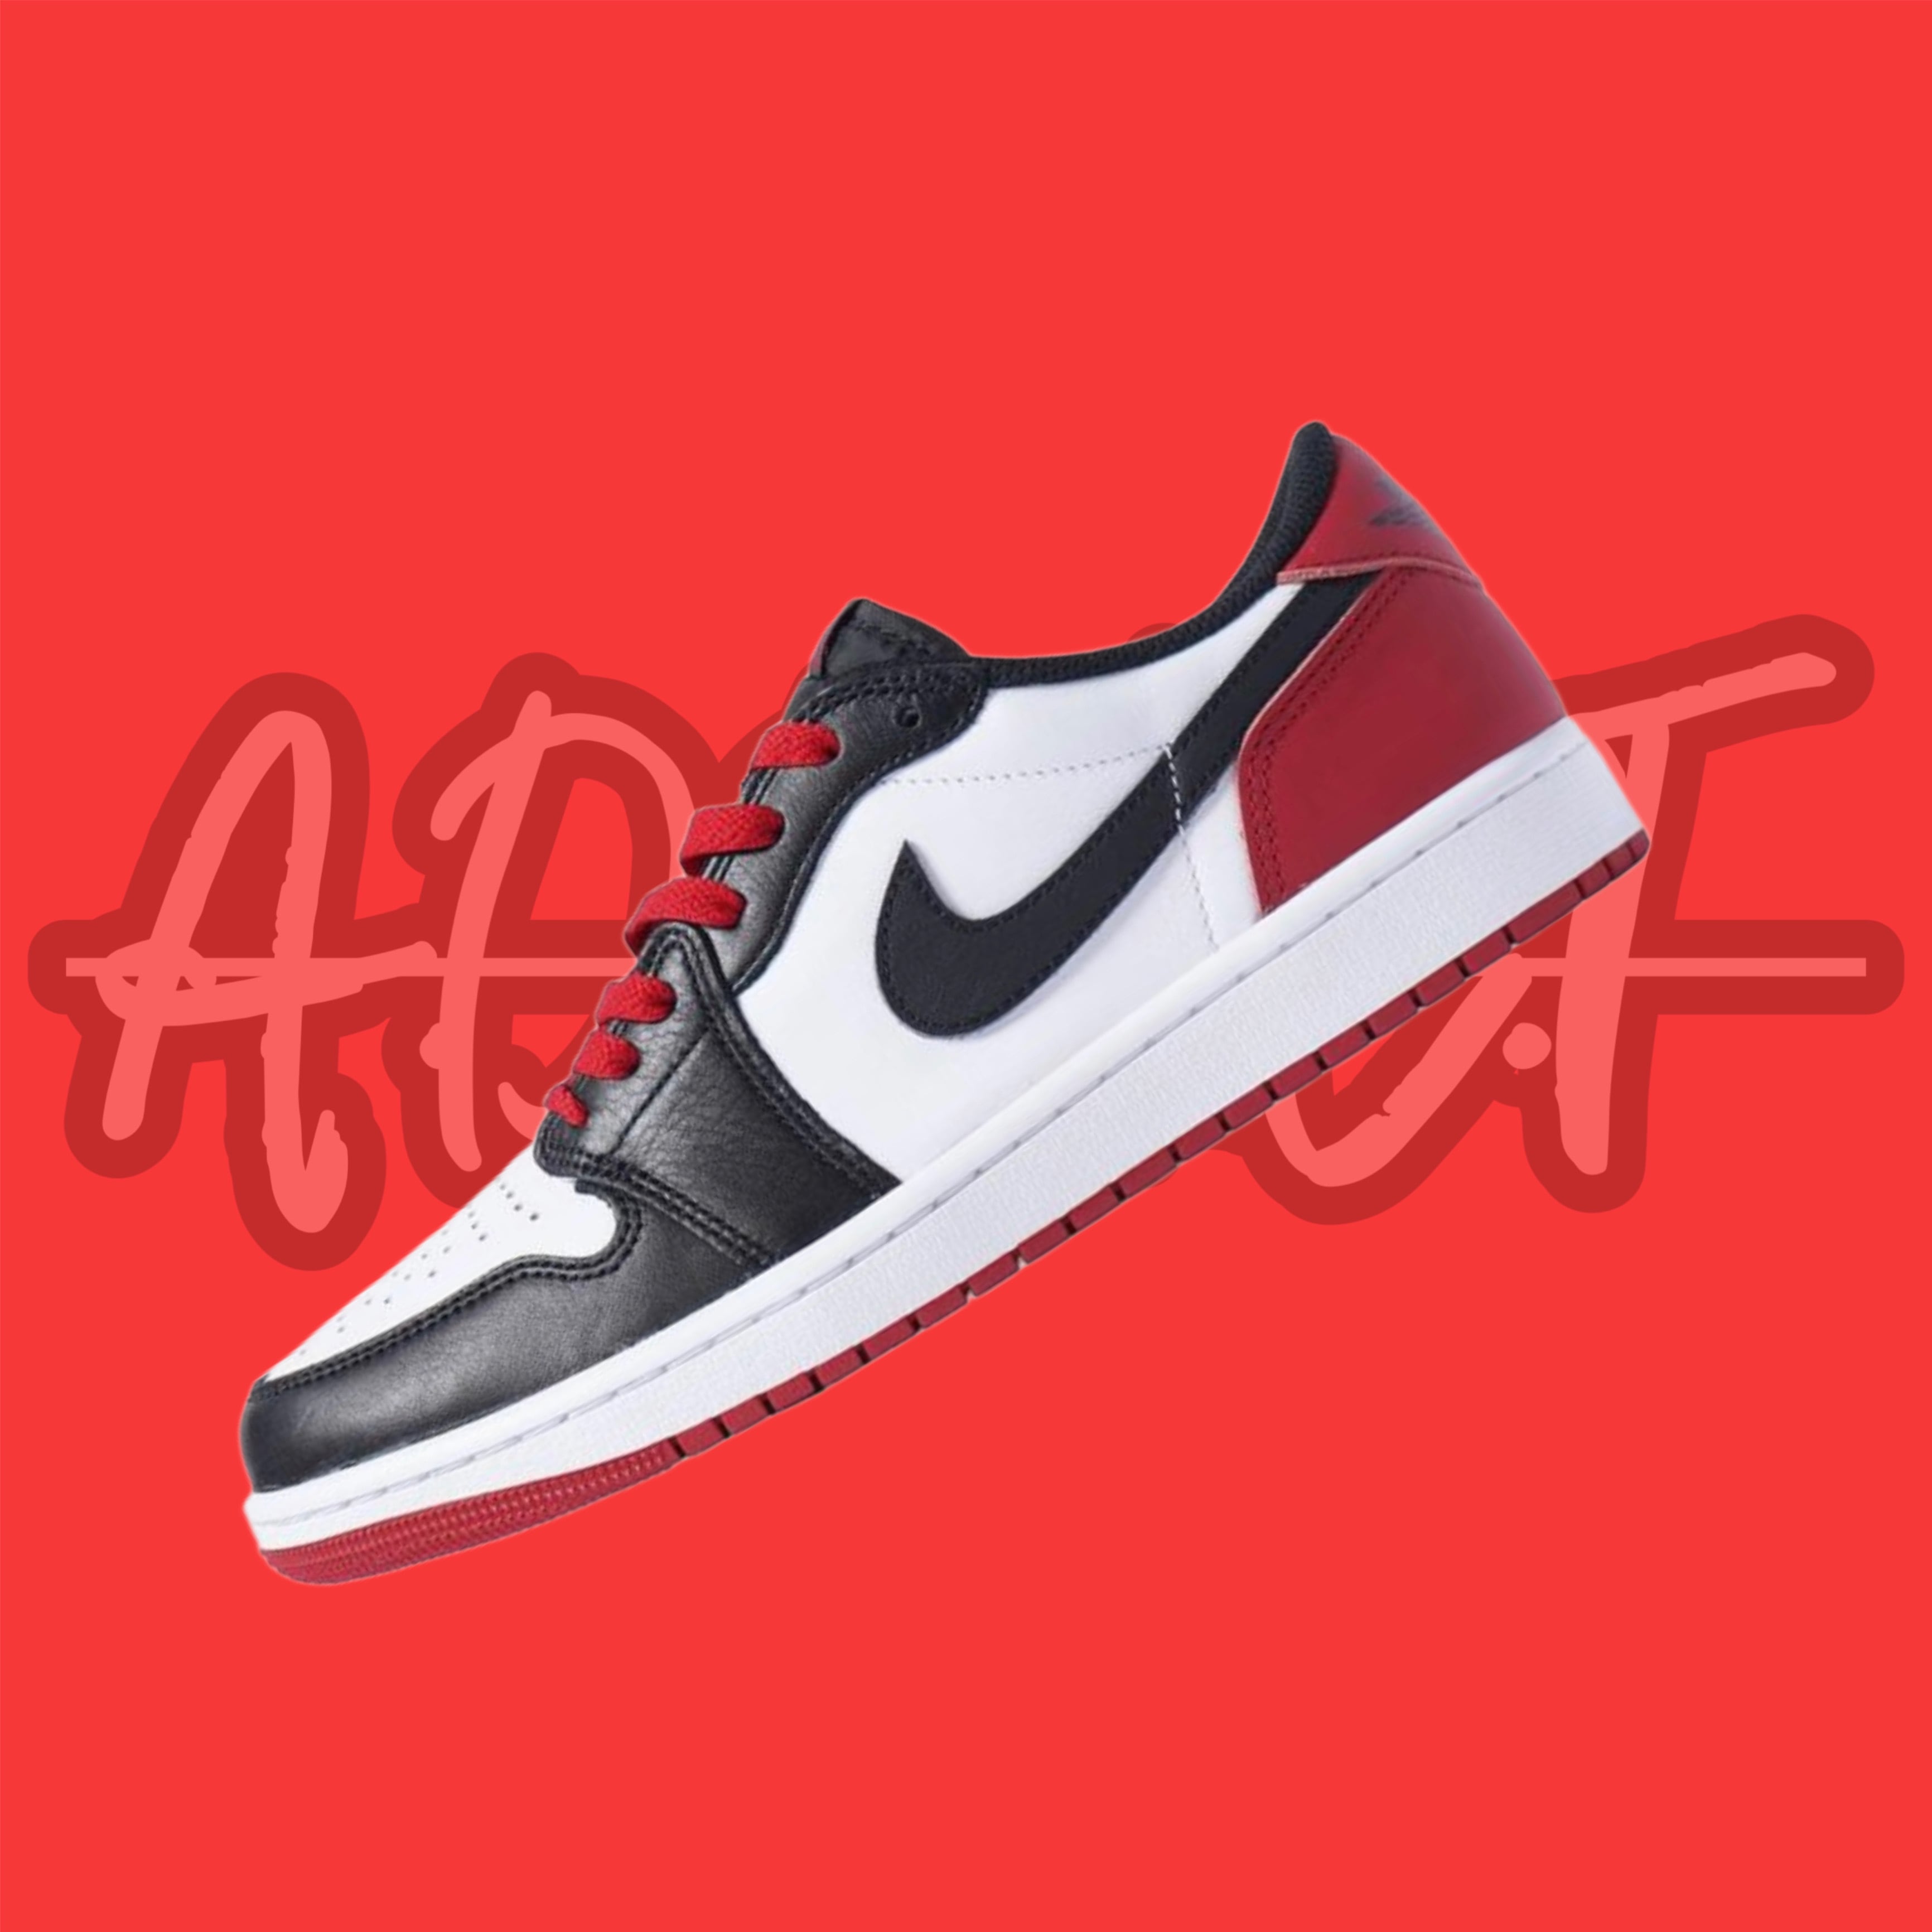 Nike Air Jordan 1 Retro Low “Black Toe”